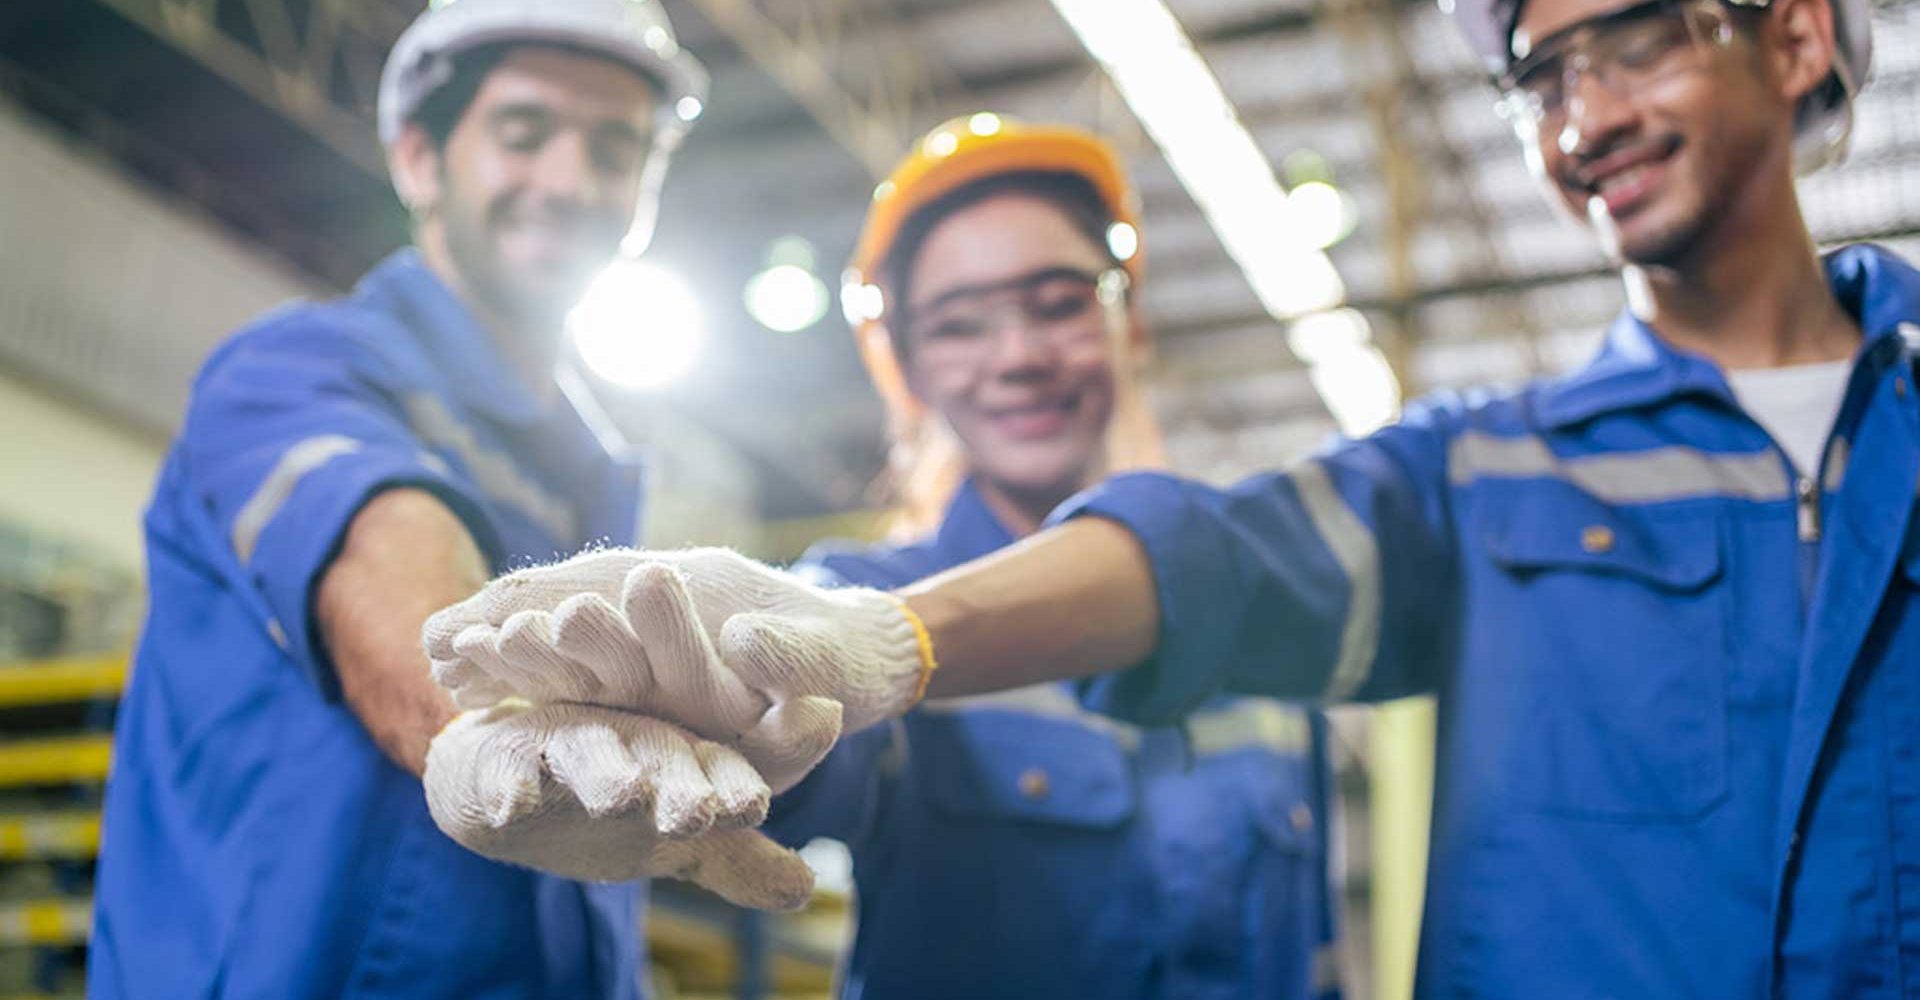 tre operai che sorridono e uniscono le mani perchè fanno parte di un team magazzinieri efficienti